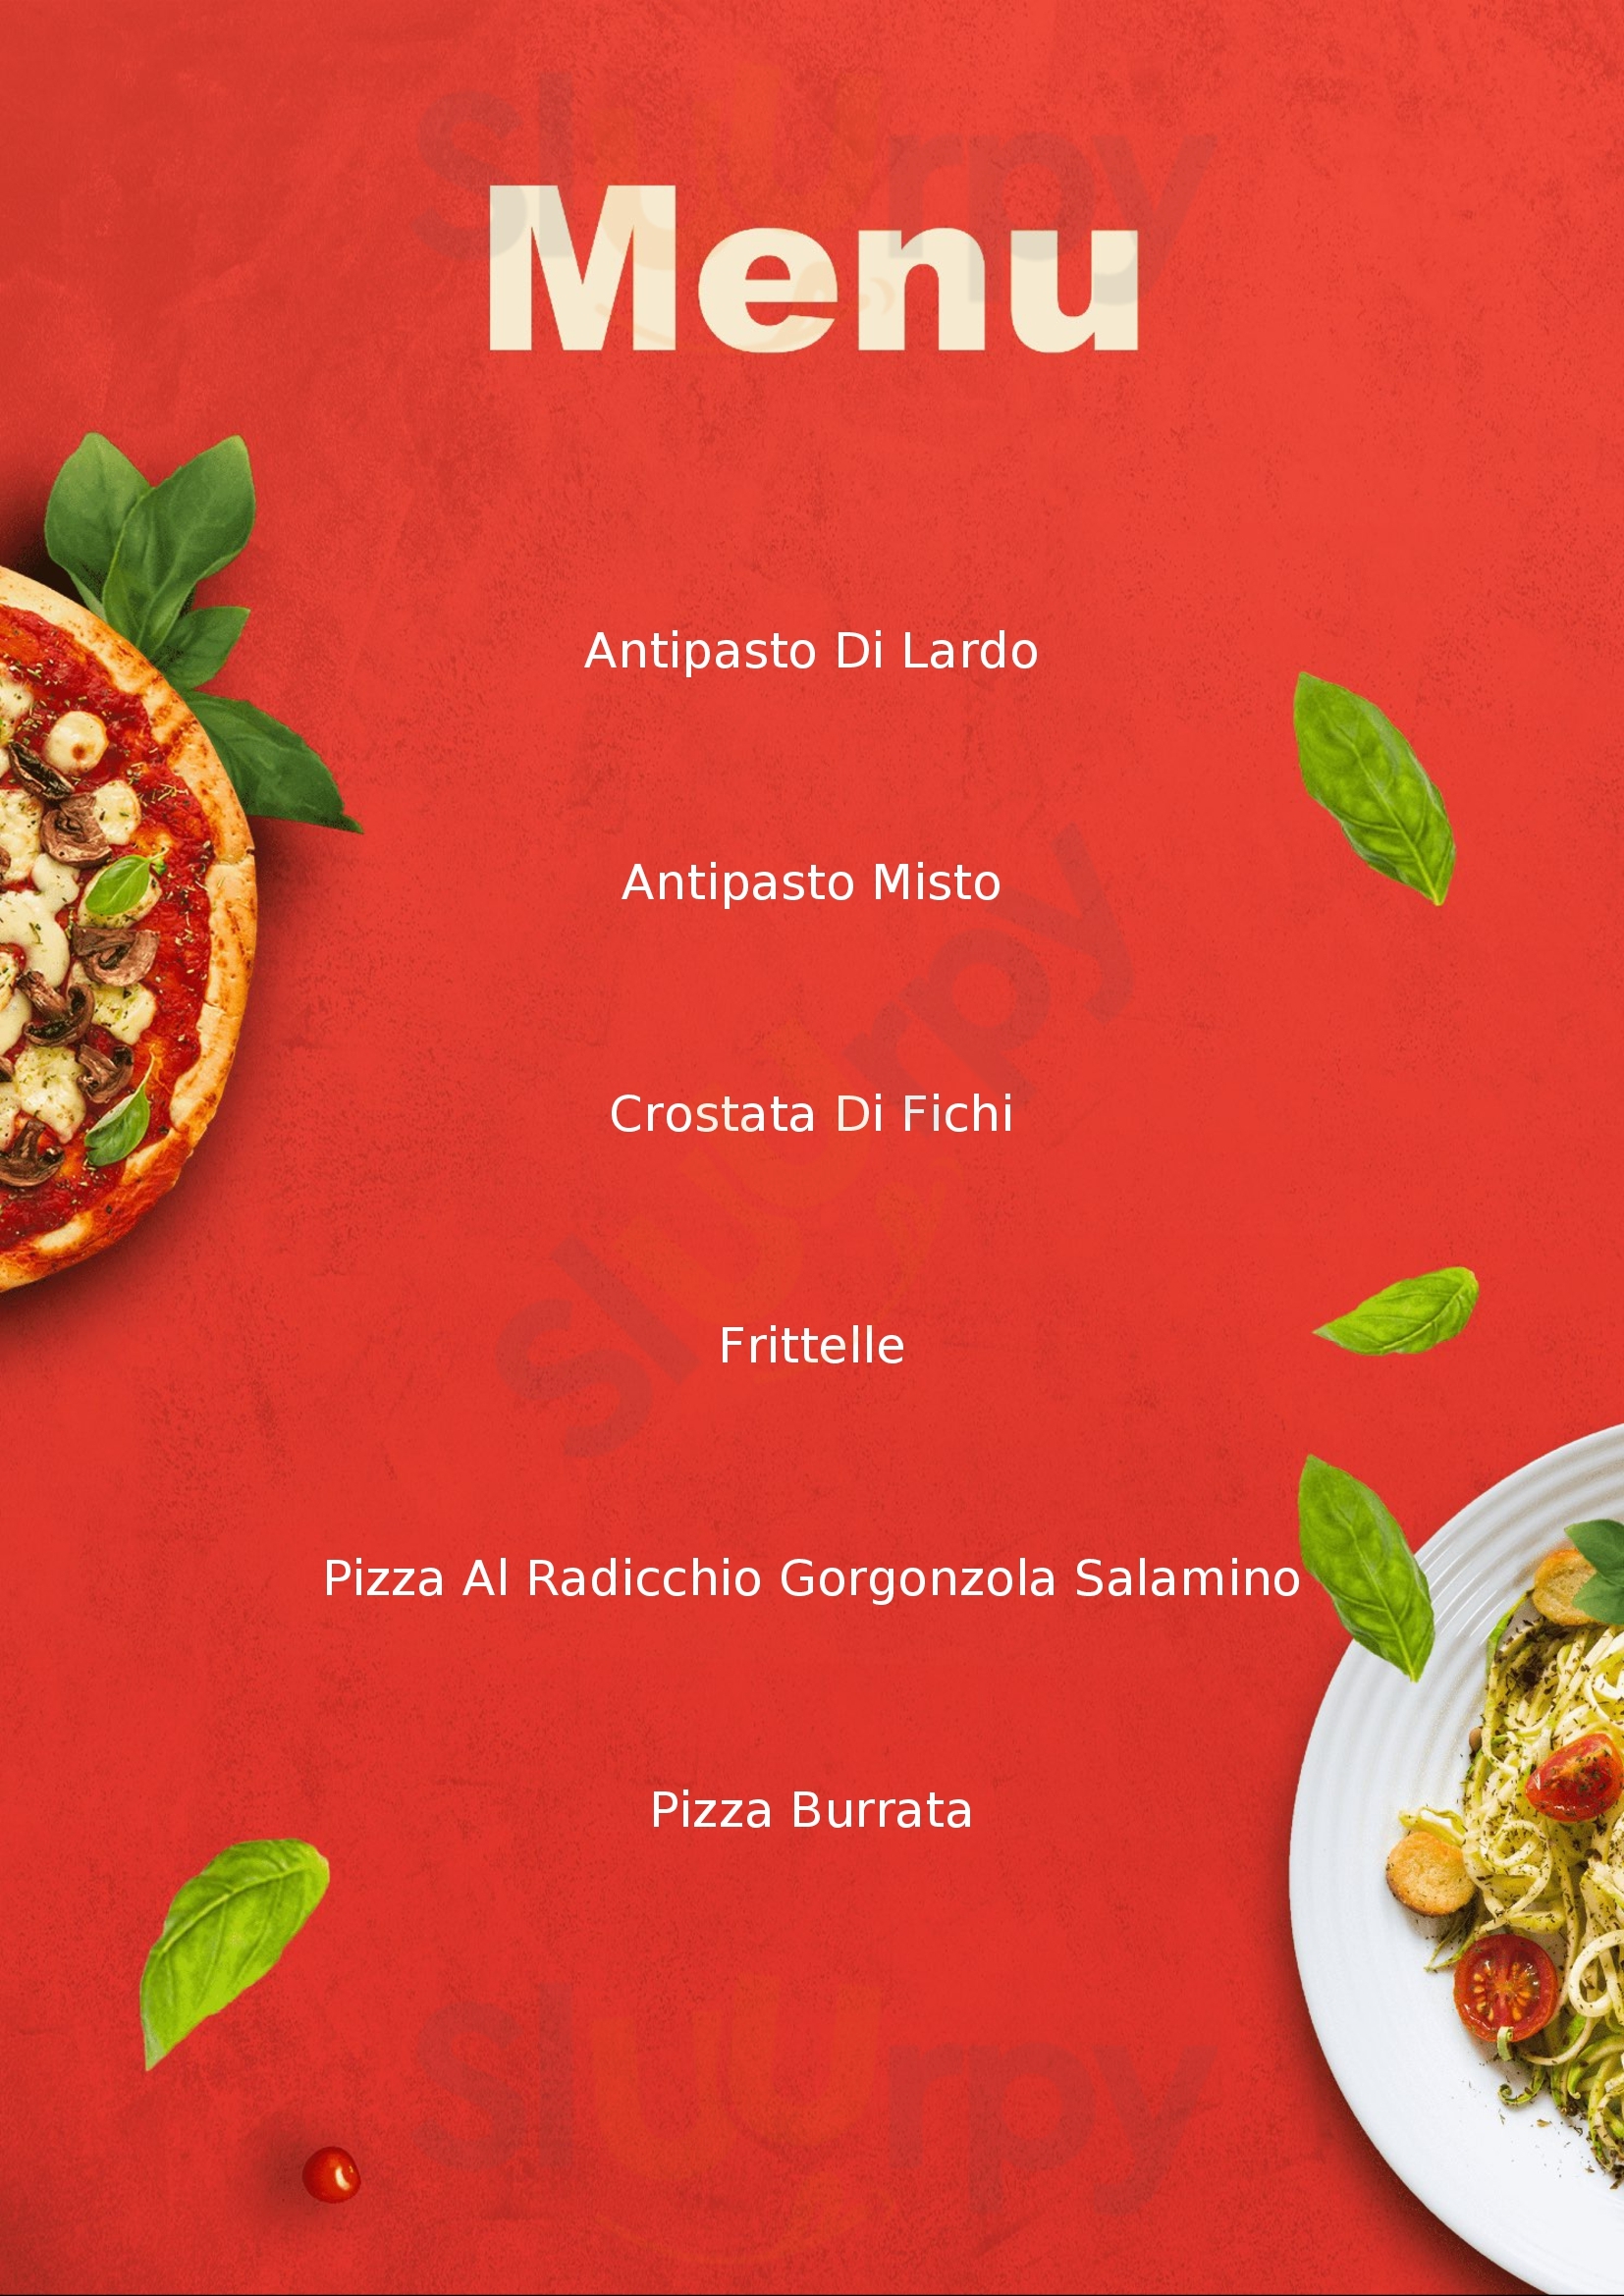 Antica Pizzeria e Trattoria Monterotondo Montecchio Precalcino menù 1 pagina